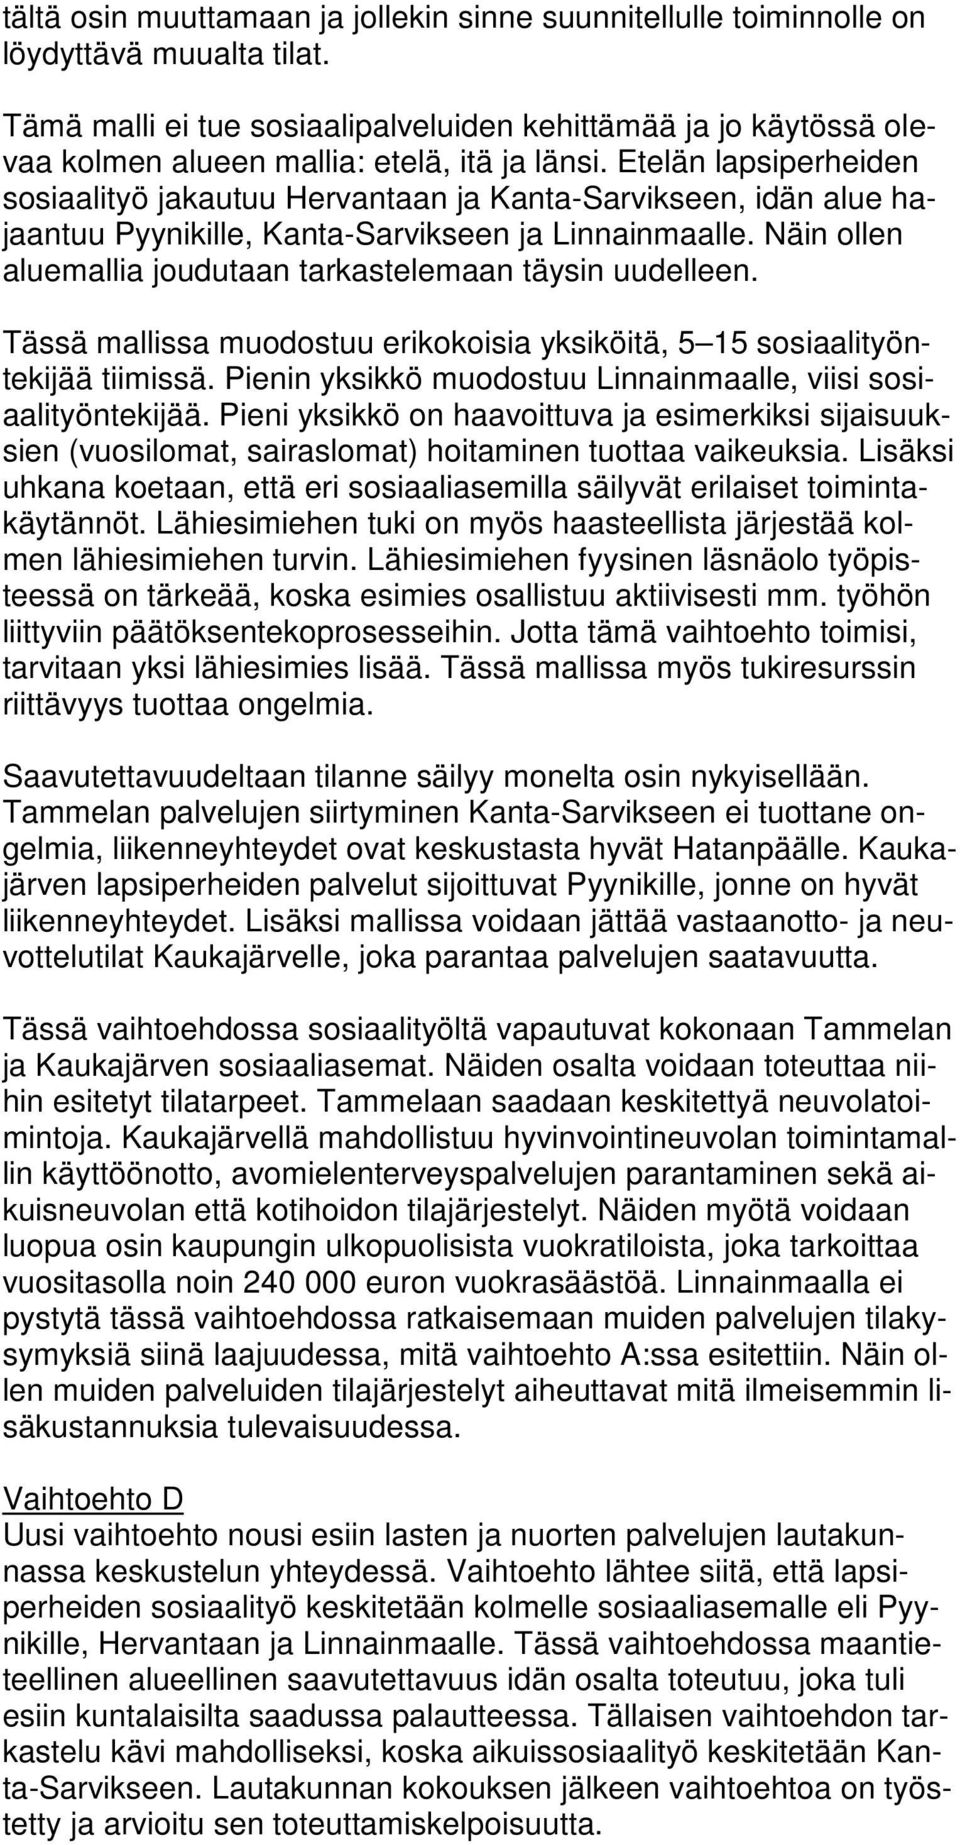 Etelän lapsiperheiden sosiaalityö jakautuu Hervantaan ja Kanta-Sarvikseen, idän alue hajaantuu Pyynikille, Kanta-Sarvikseen ja Linnainmaalle.